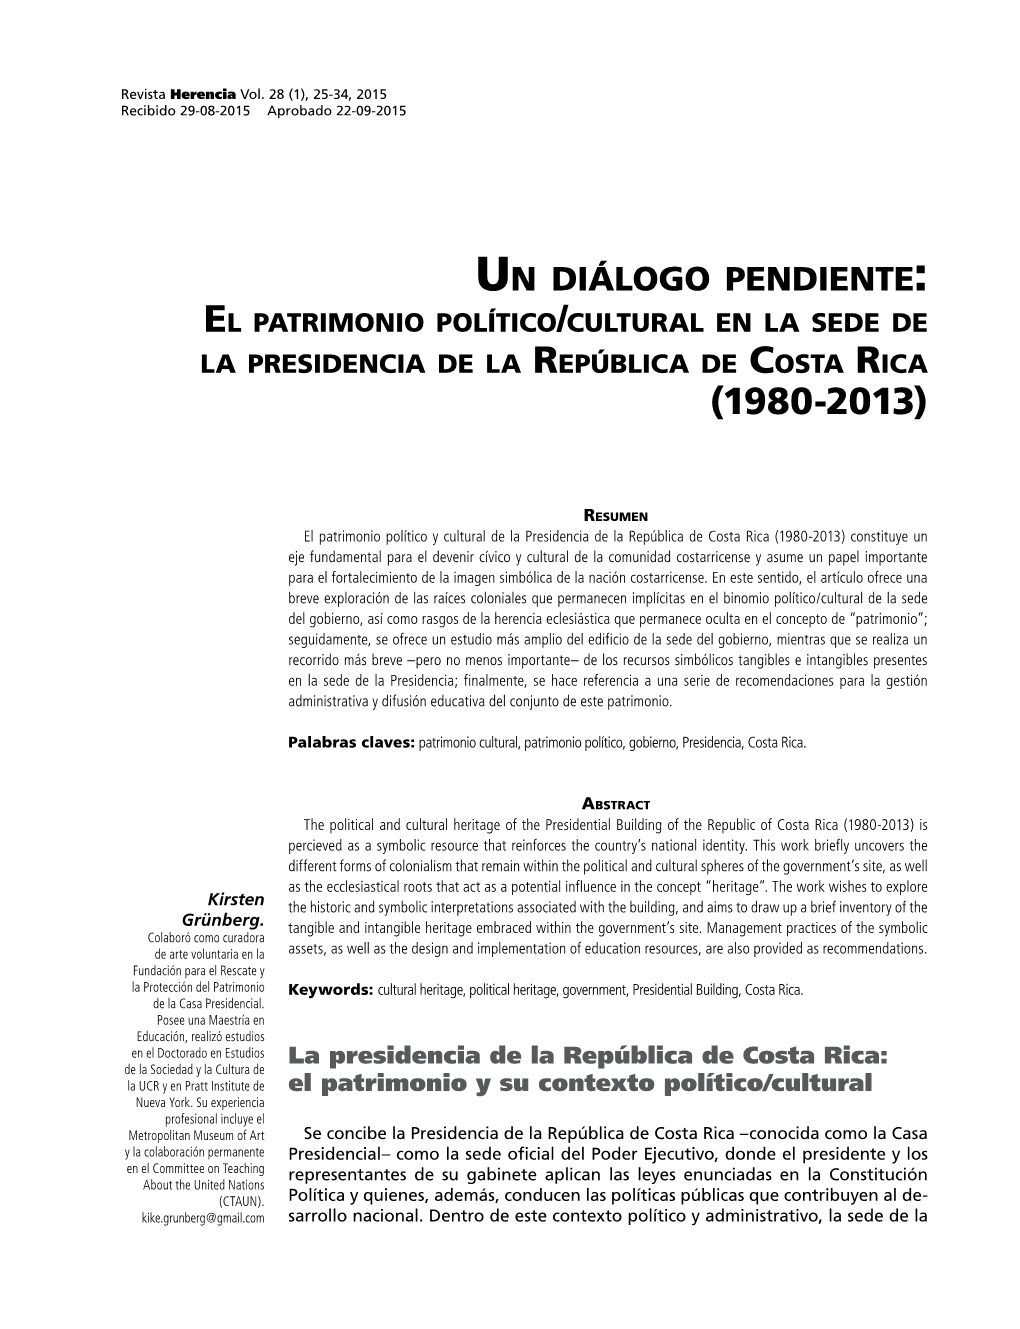 Un Diálogo Pendiente: El Patrimonio Político/Cultural En La Sede De La Presidencia De La República De Costa Rica (1980-2013)